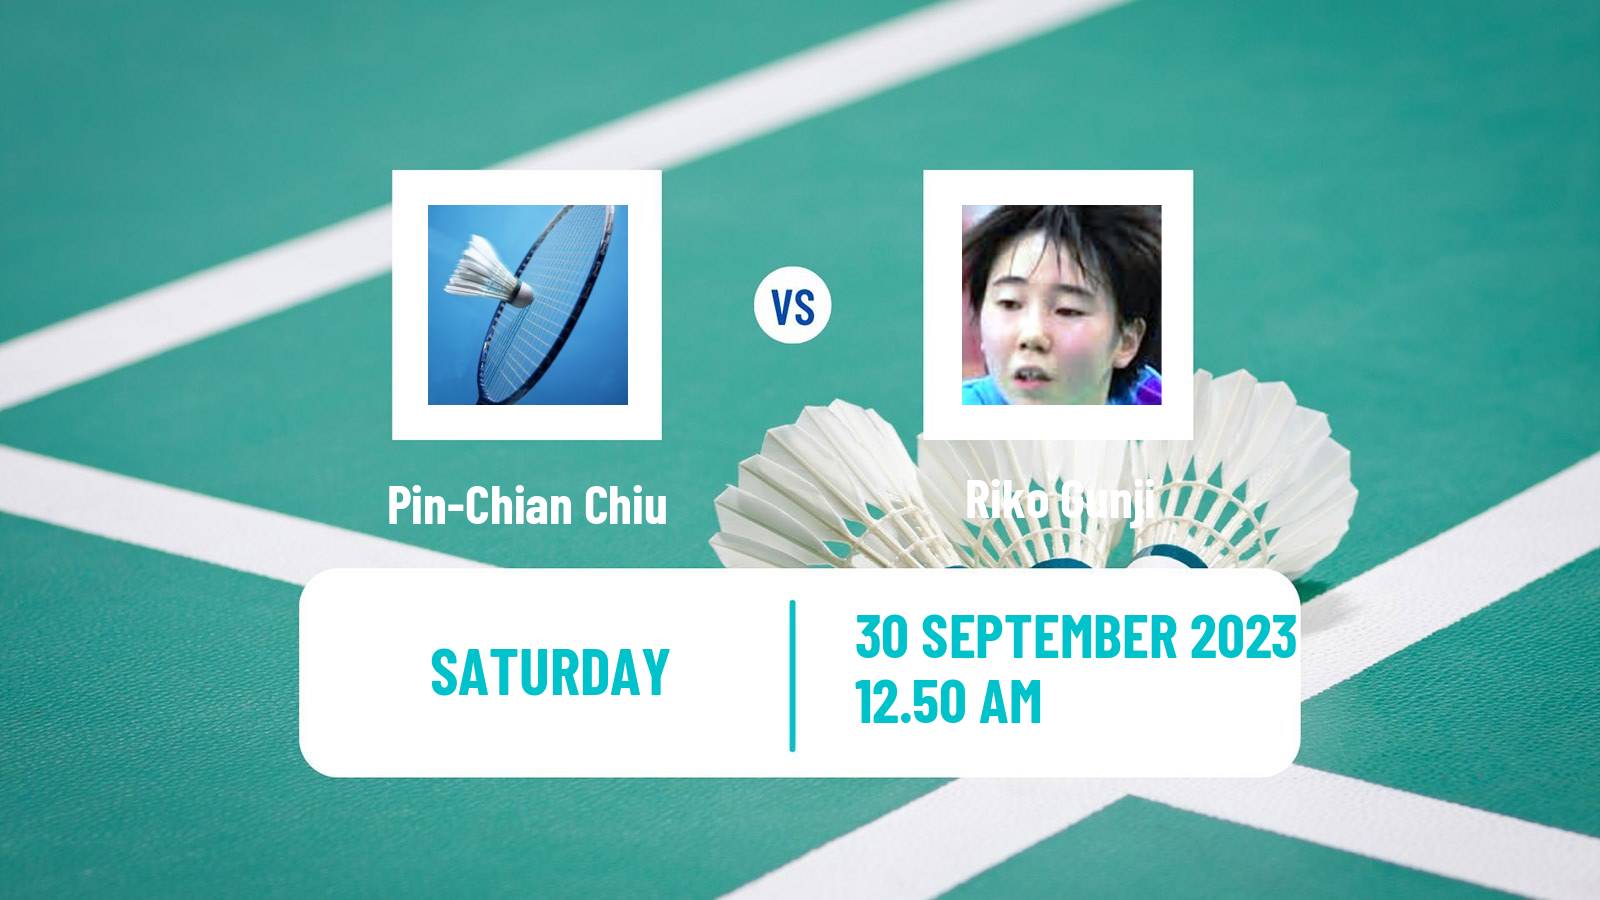 Badminton BWF World Tour Kaohsiung Masters Women Pin-Chian Chiu - Riko Gunji